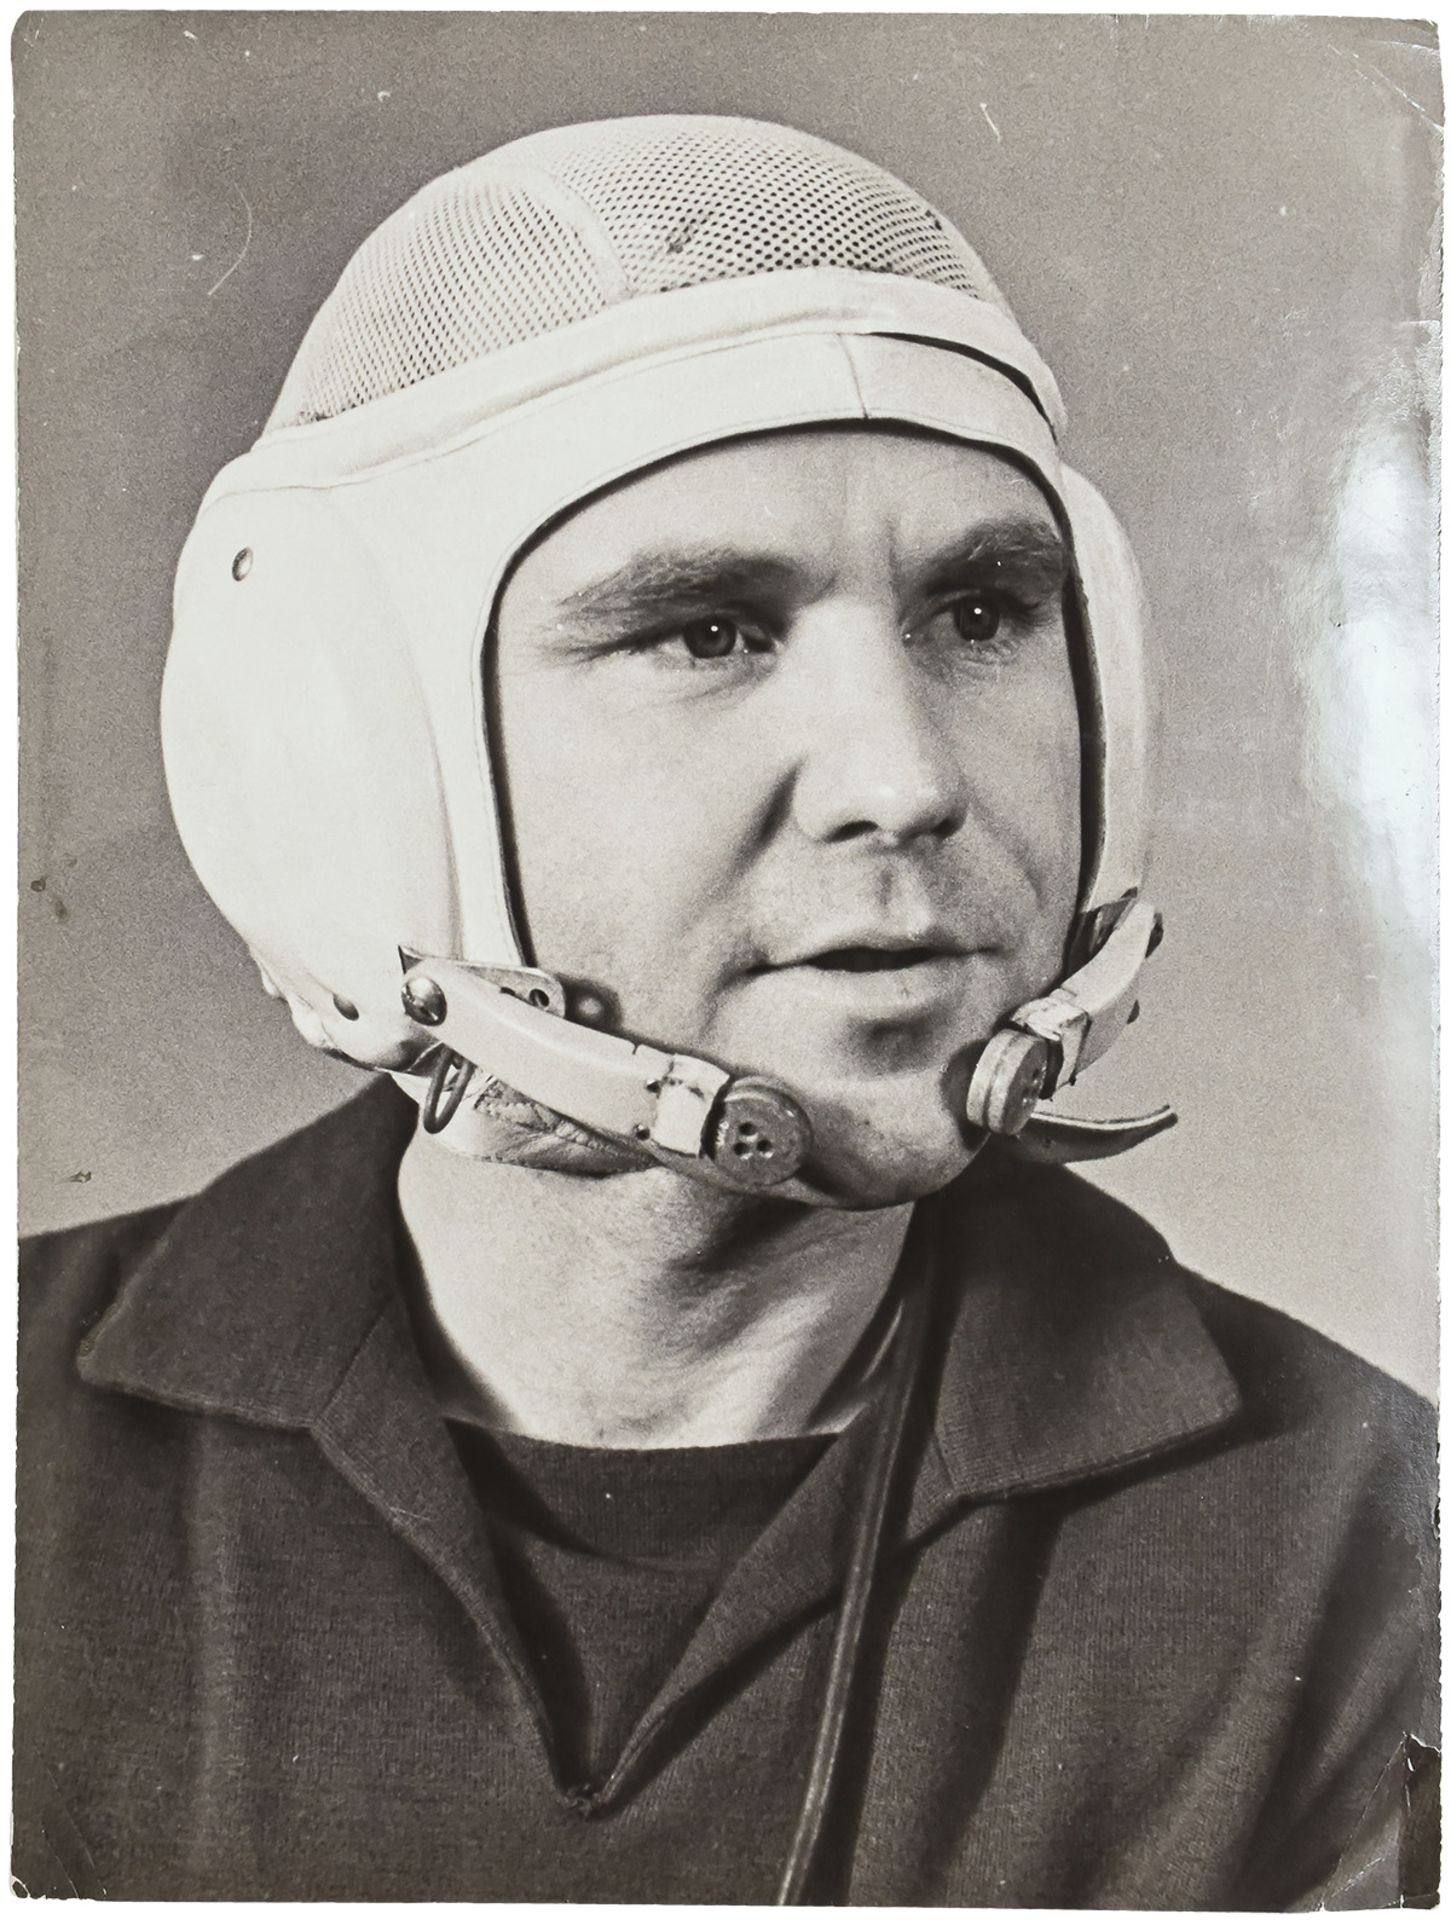 Cheredintsev, V. Vladimir Shatalov, Soviet cosmonaut. Press photo. 1969. 24x18 cm.